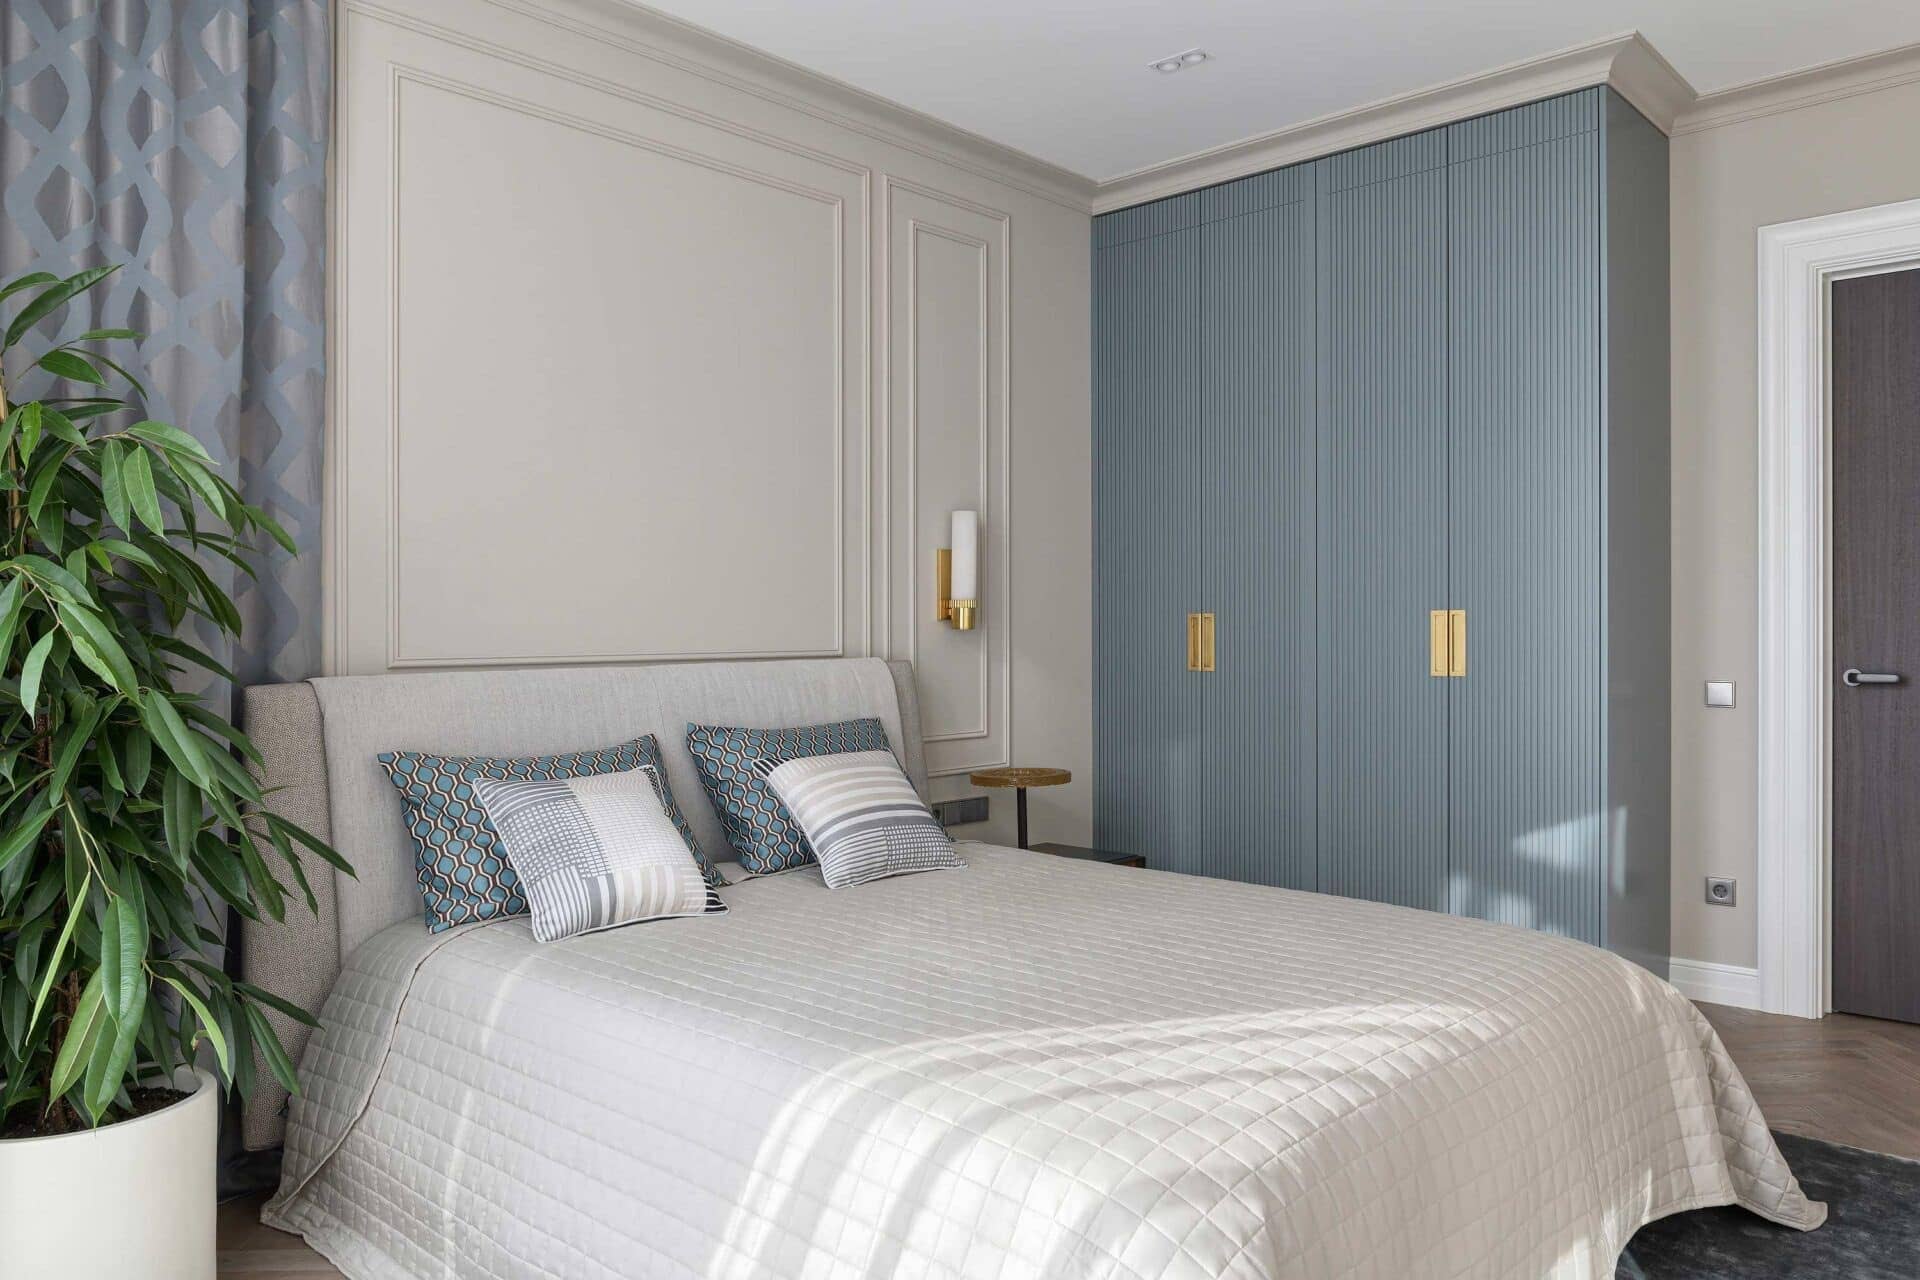 Nội thất phòng ngủ kết hợp xanh biển và trắng tinh khiết